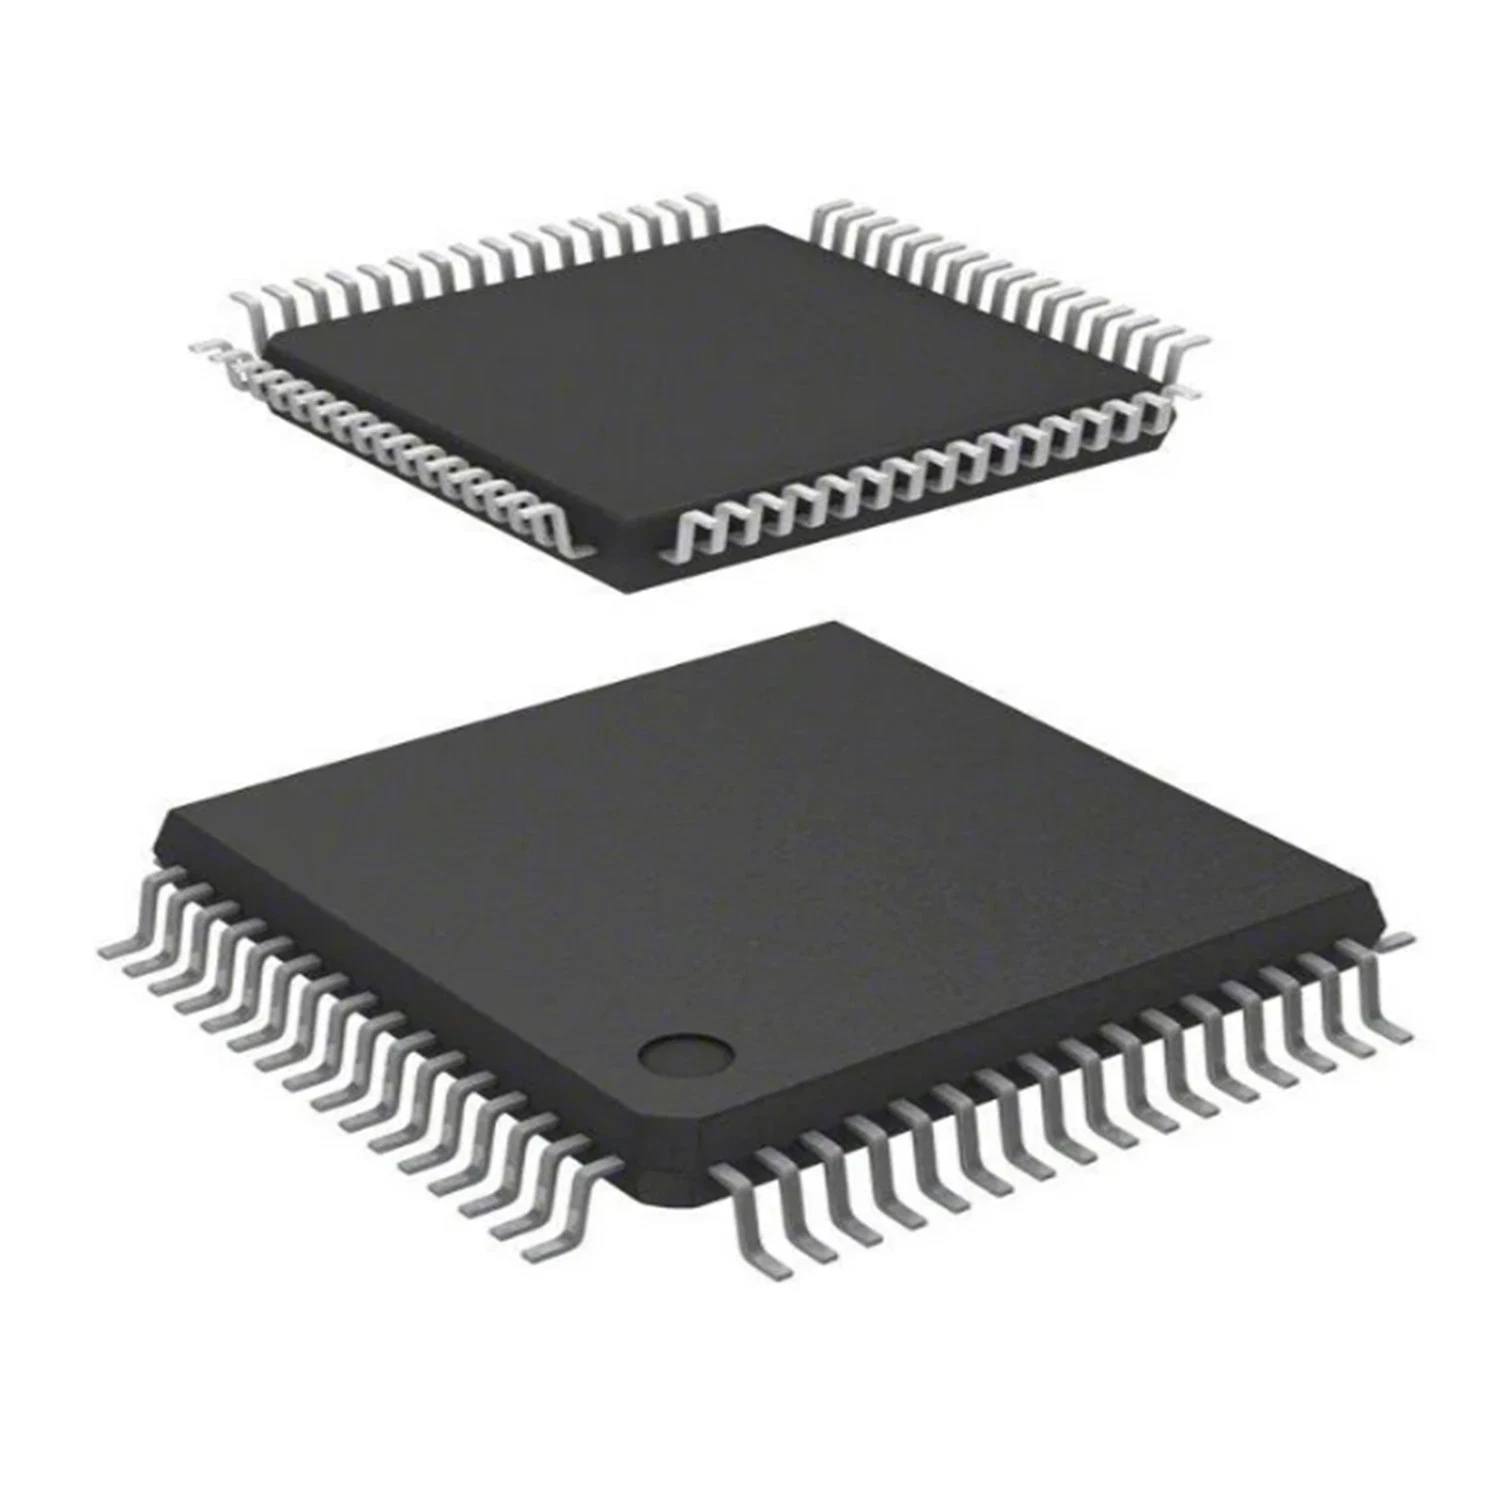 Manchas de IC 10m16sau324I7g un circuito integrado los componentes electrónicos Nuevo